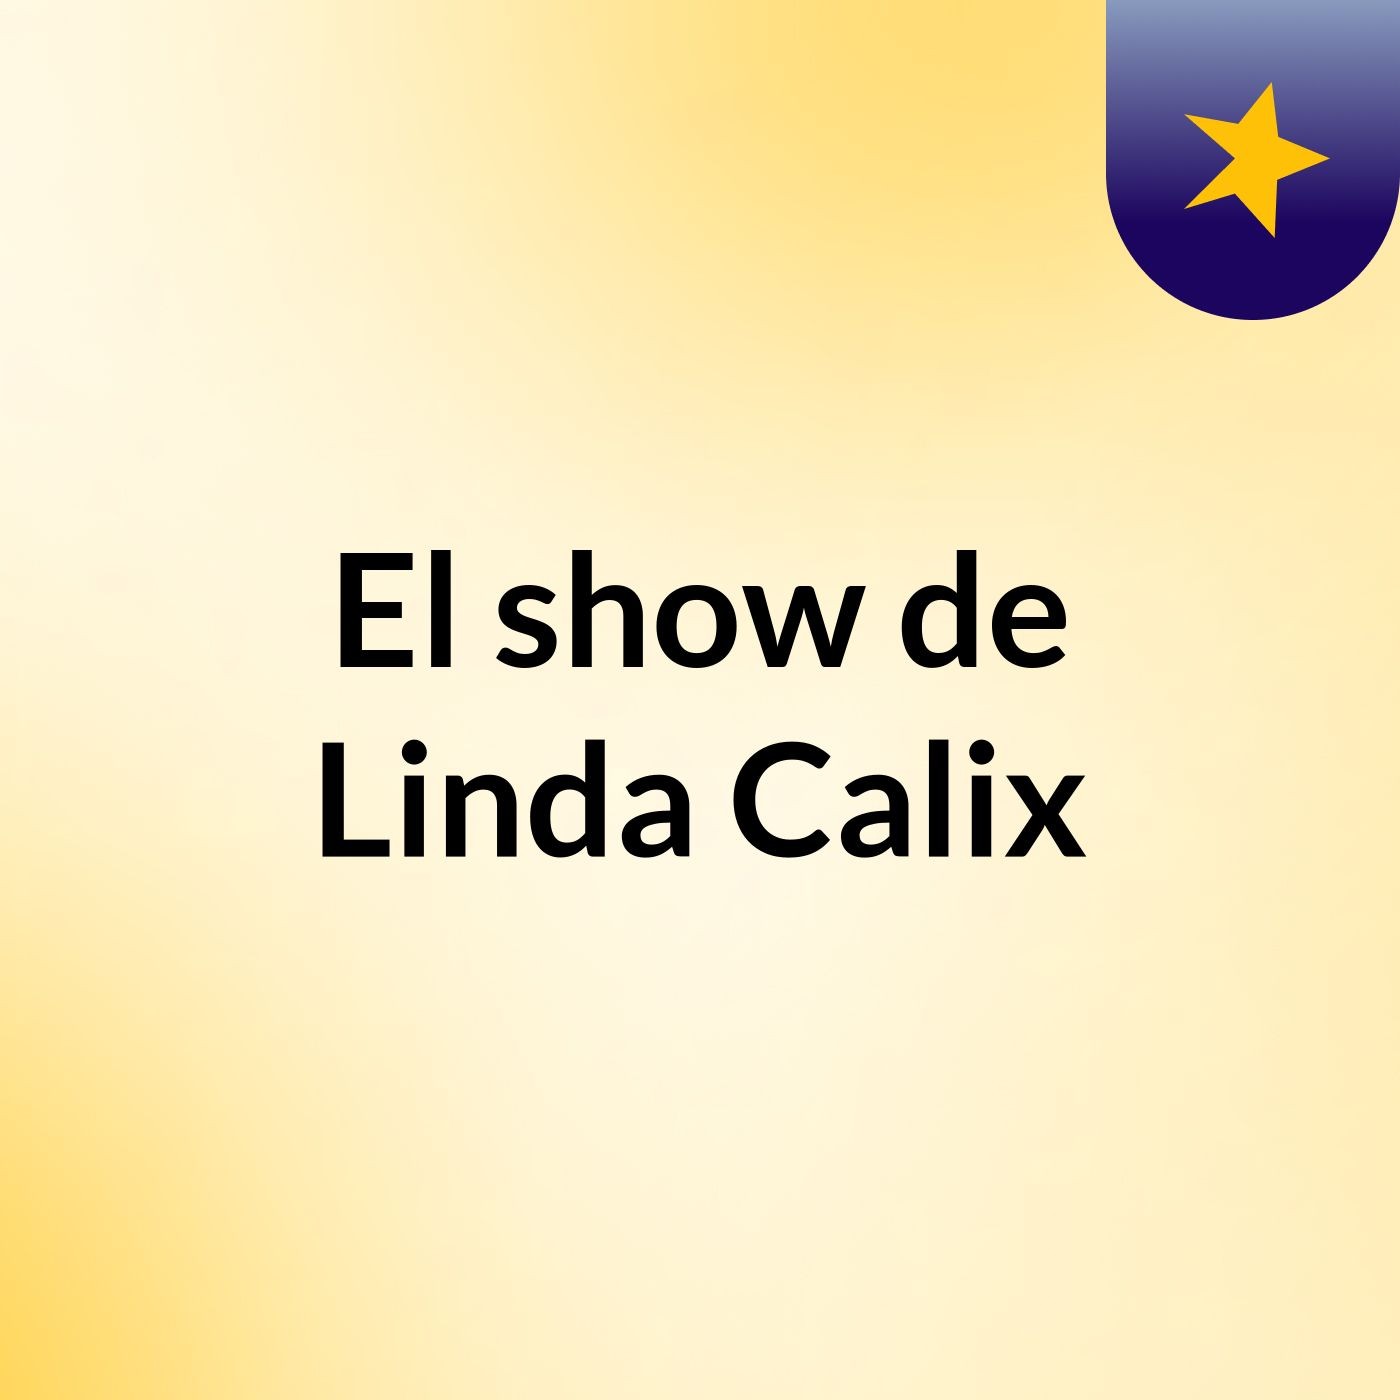 El show de Linda Calix